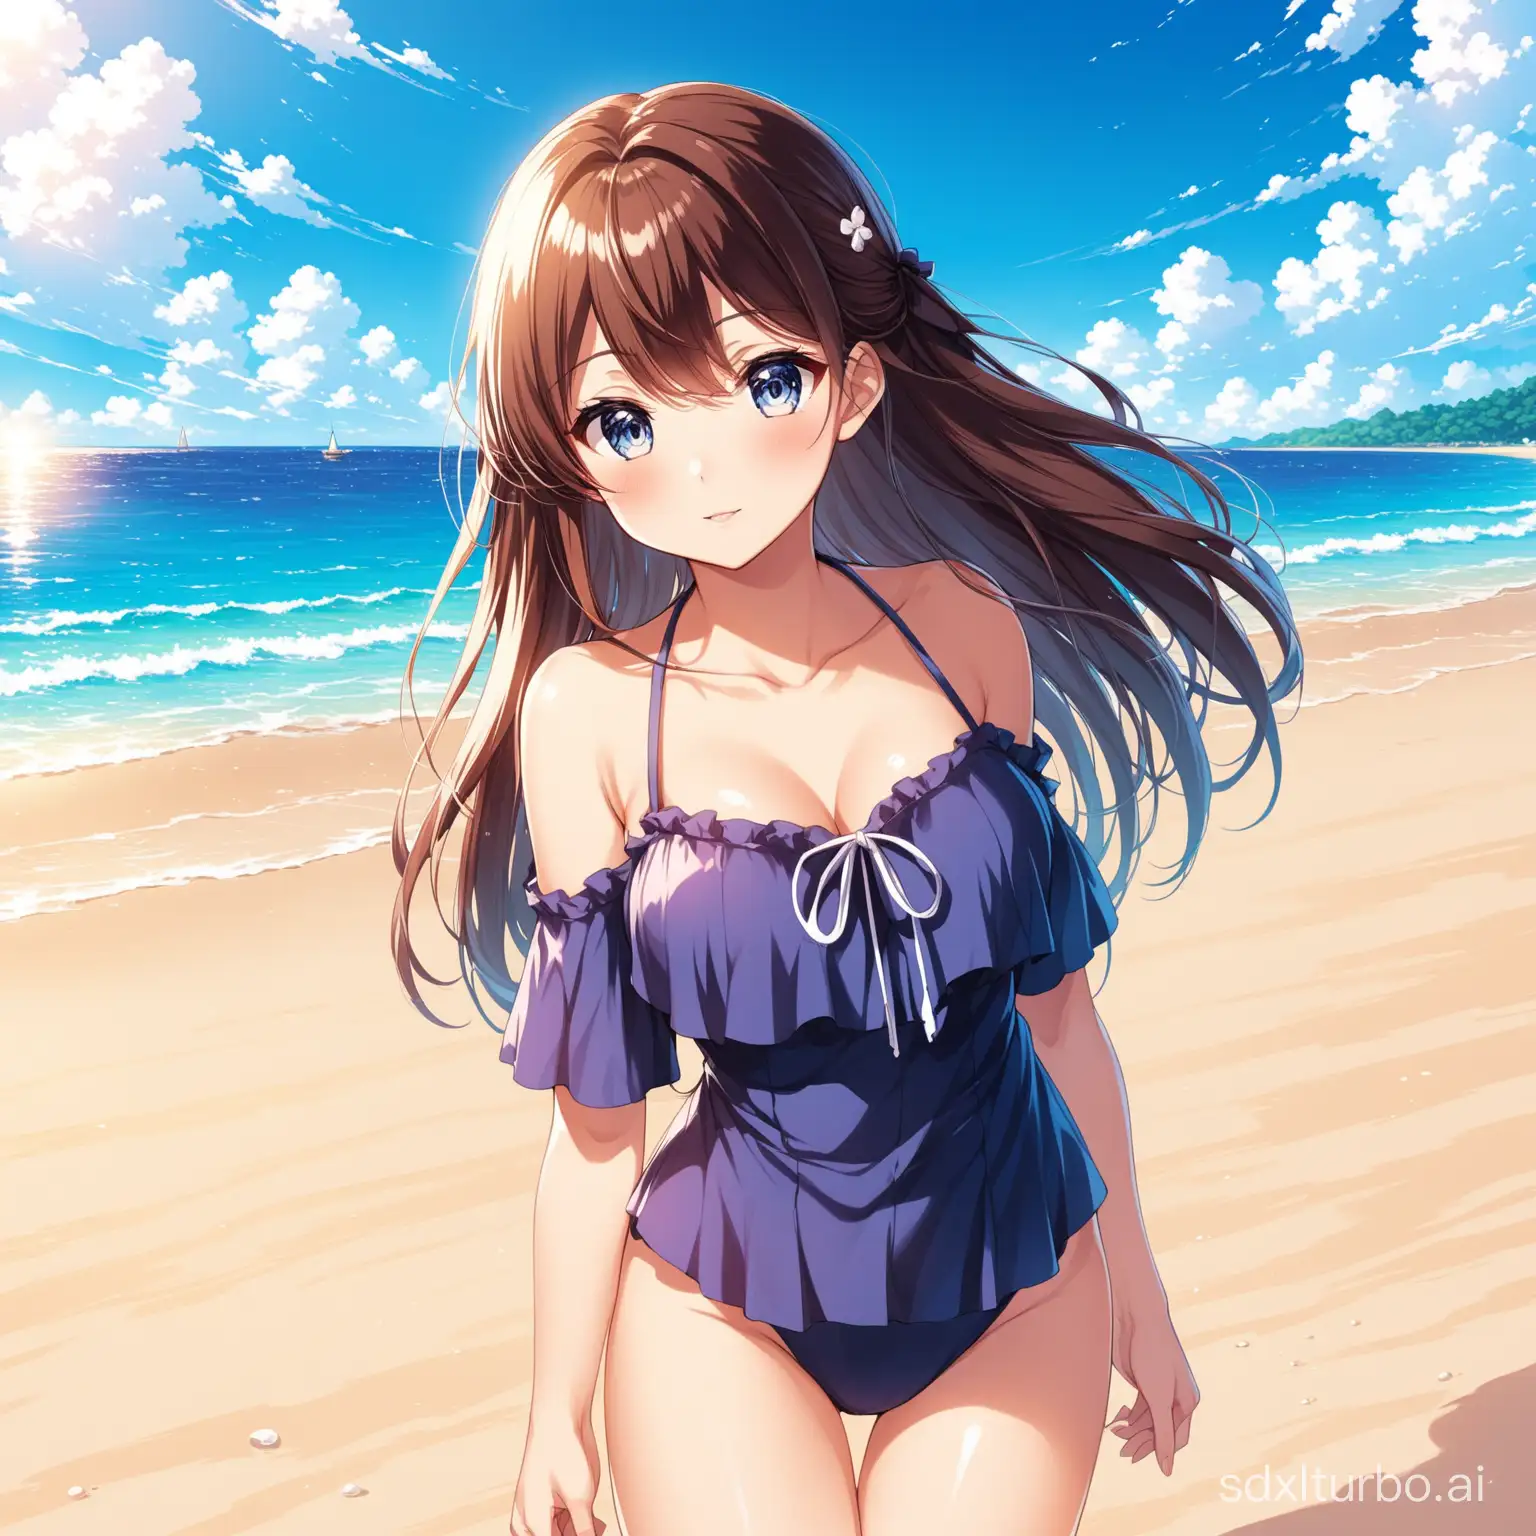 Anime girl on the beach